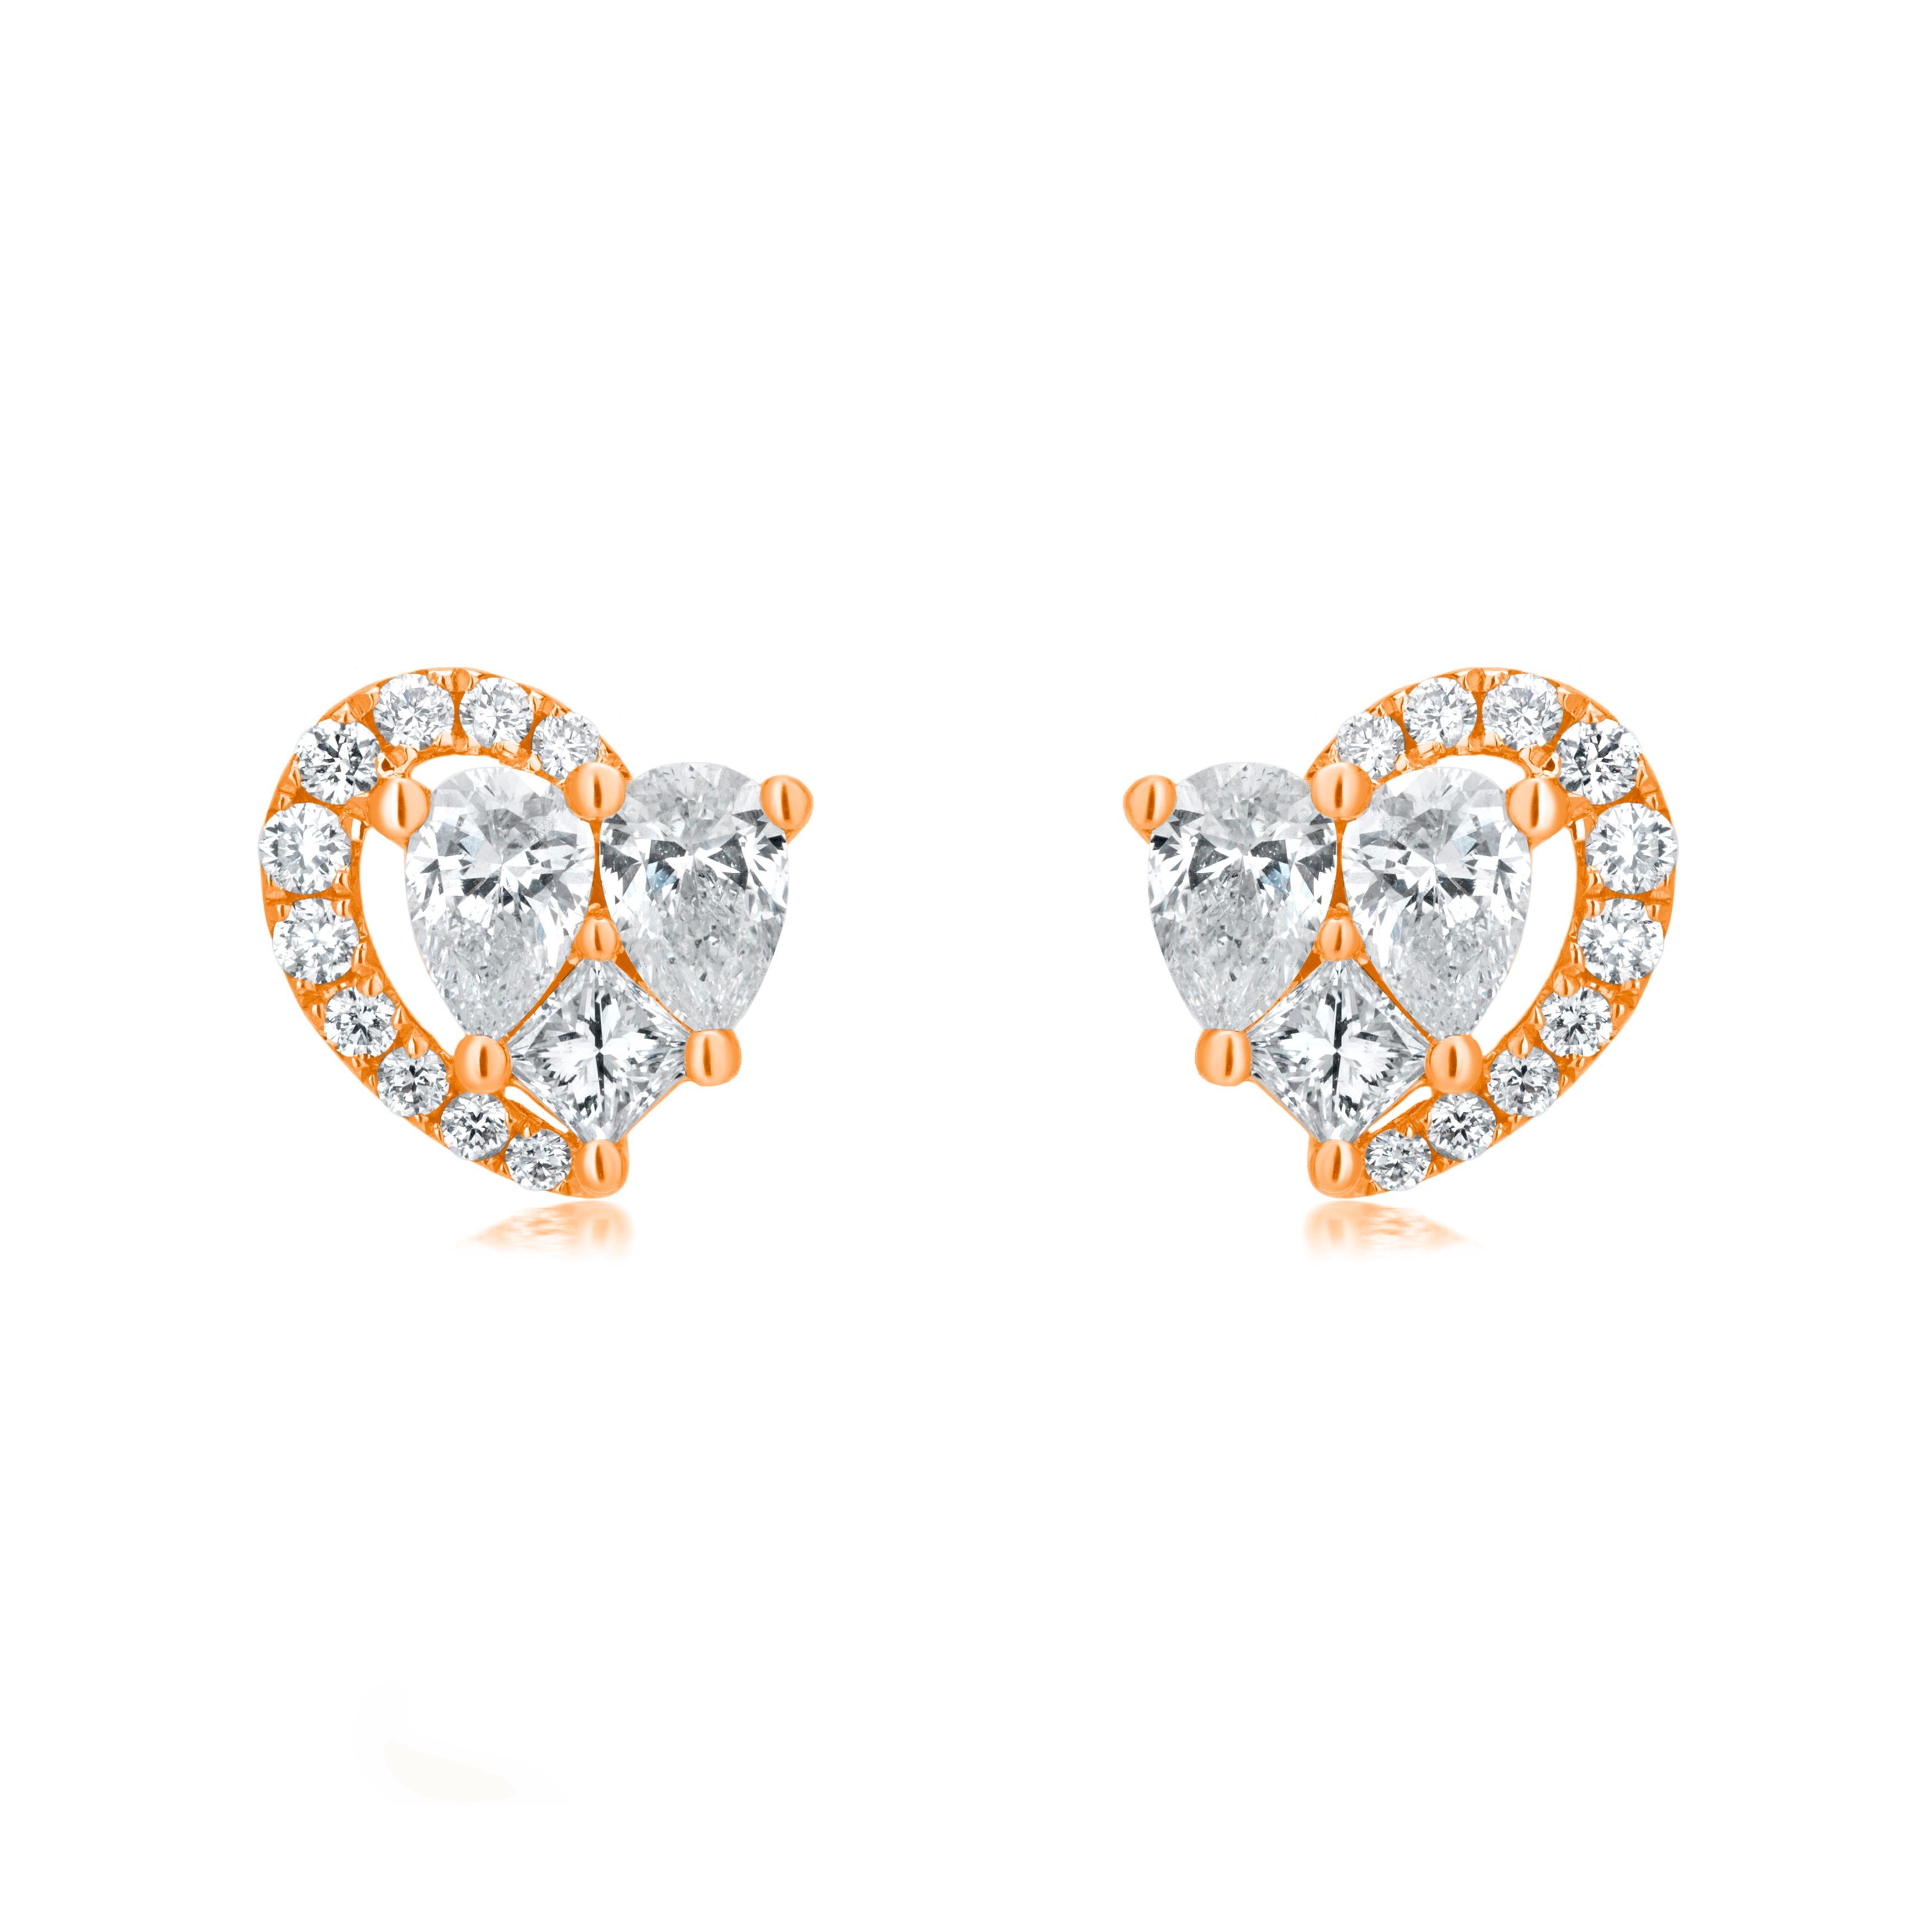 Pear Cut Luxle 1.4 Cttw Diamond Heart-Shaped Stud Earrings in 18k Rose Gold For Sale